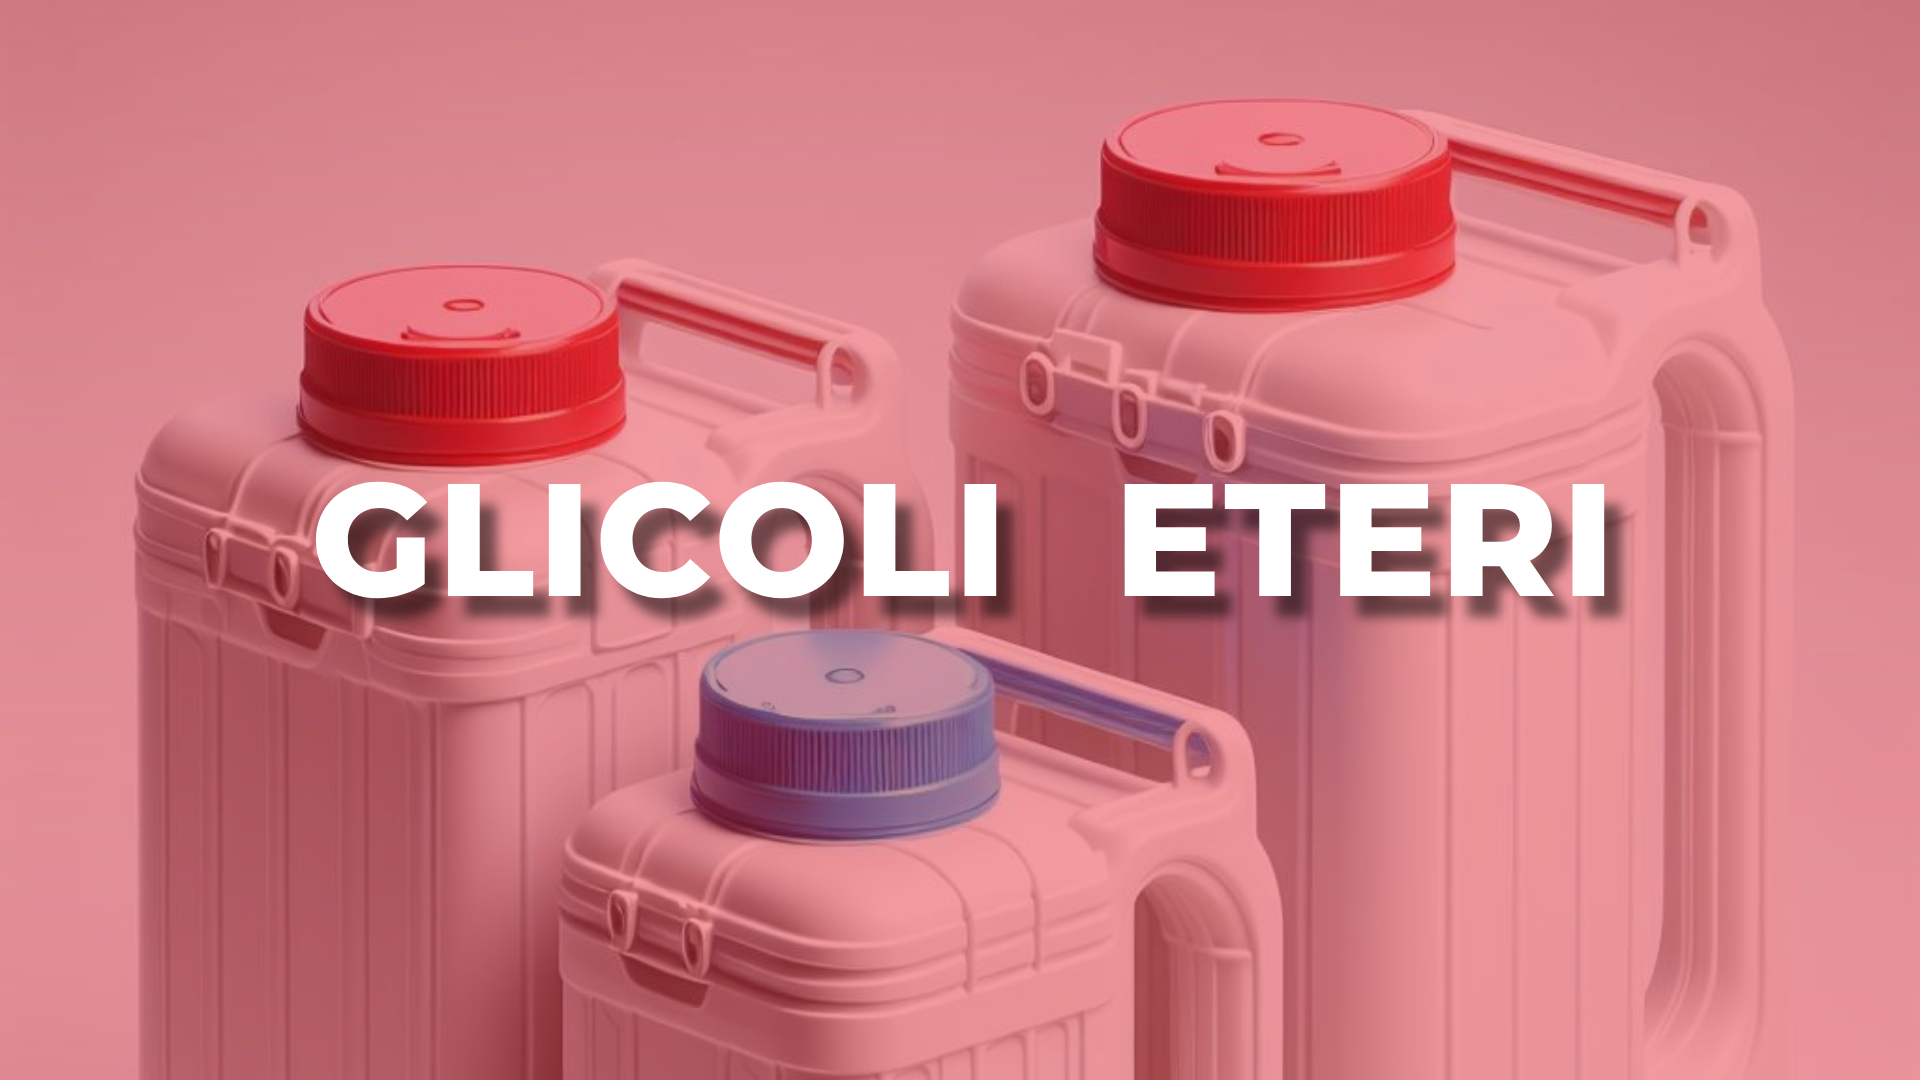 Mixer srl solventi diluenti sostanze chimiche prodotti chimici industriali Settima Piacenza PC glicoli eteri